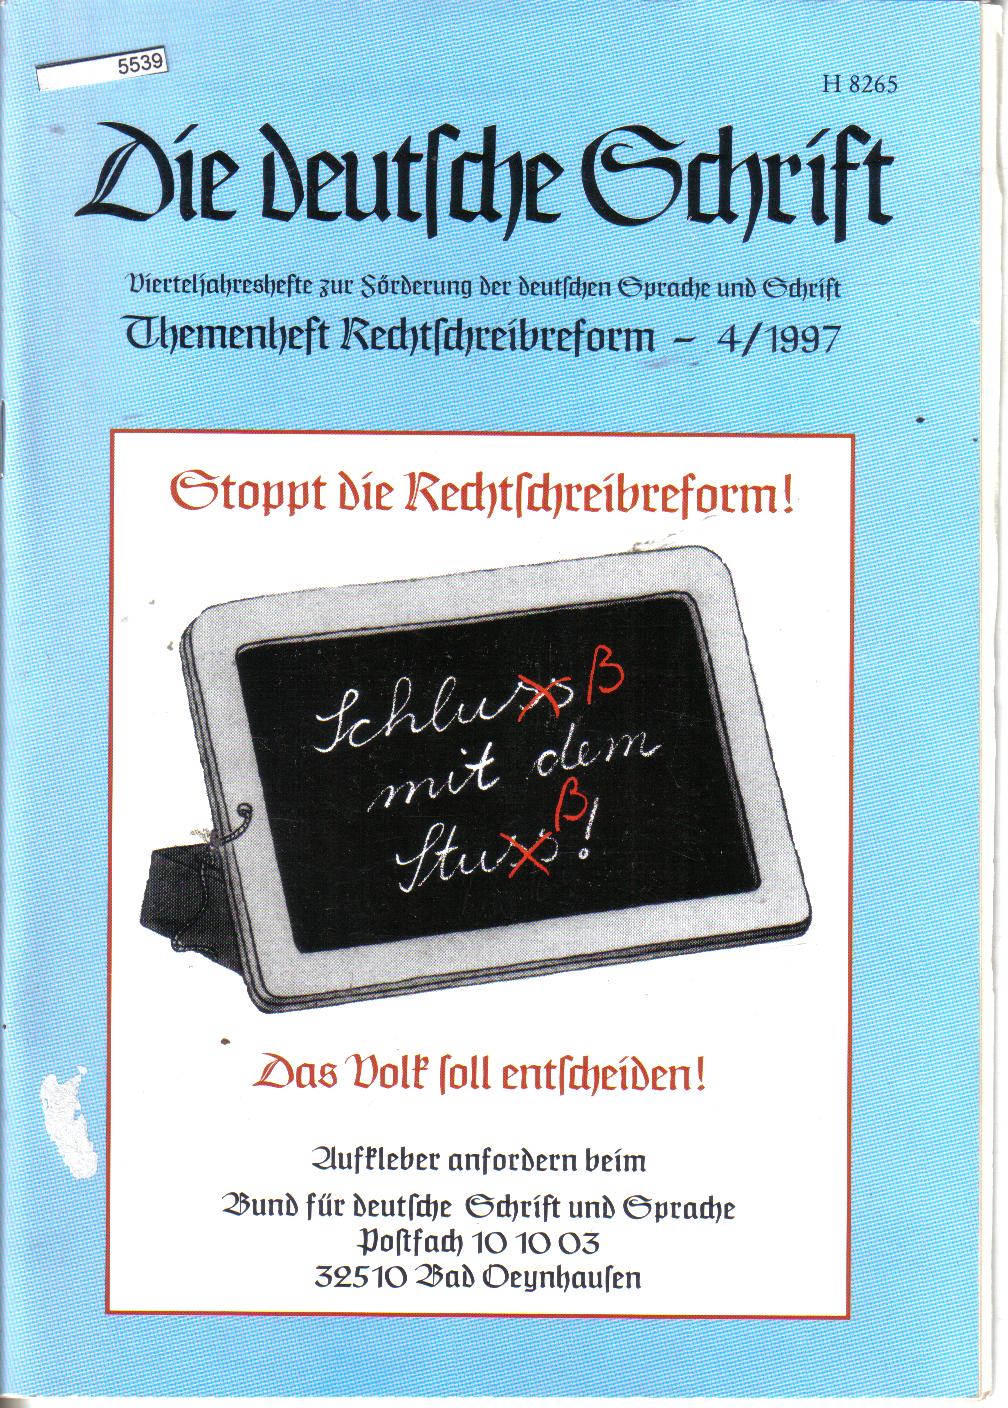 Die deutsche Schrift..Vierteljahreshefte zur Foerderung der deutschen Sprache und Schrift